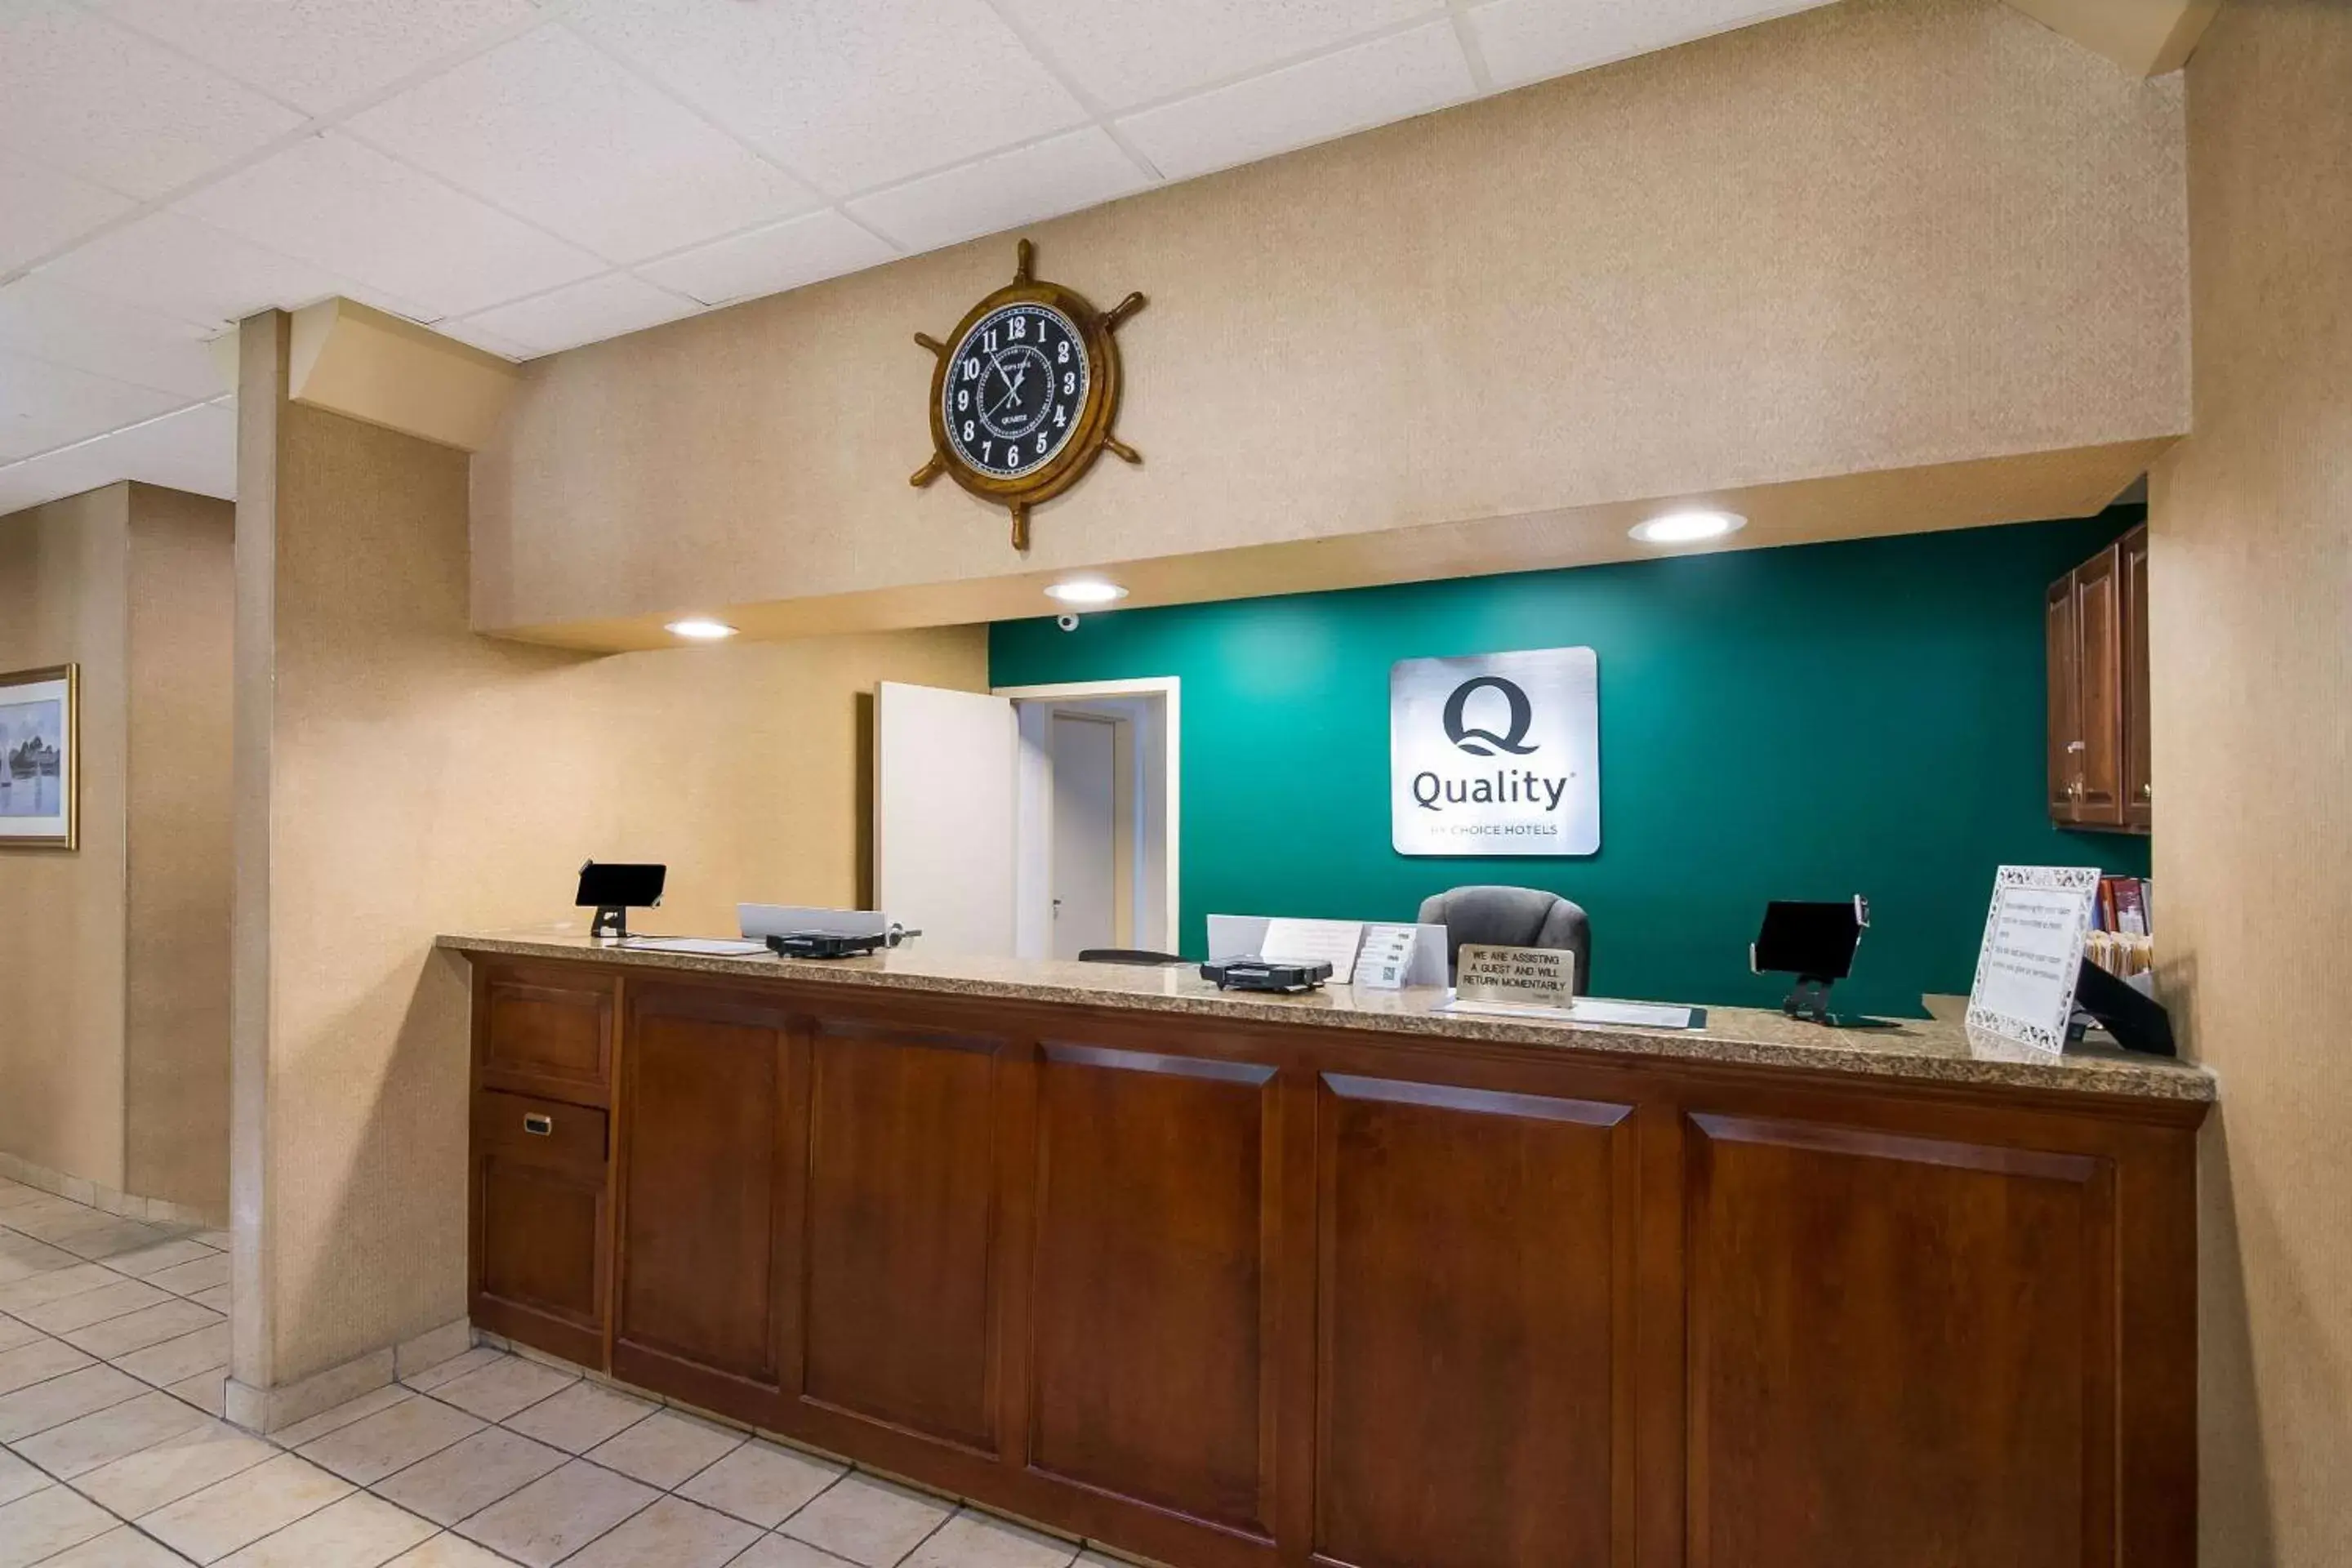 Lobby or reception, Lobby/Reception in Quality Inn Mystic